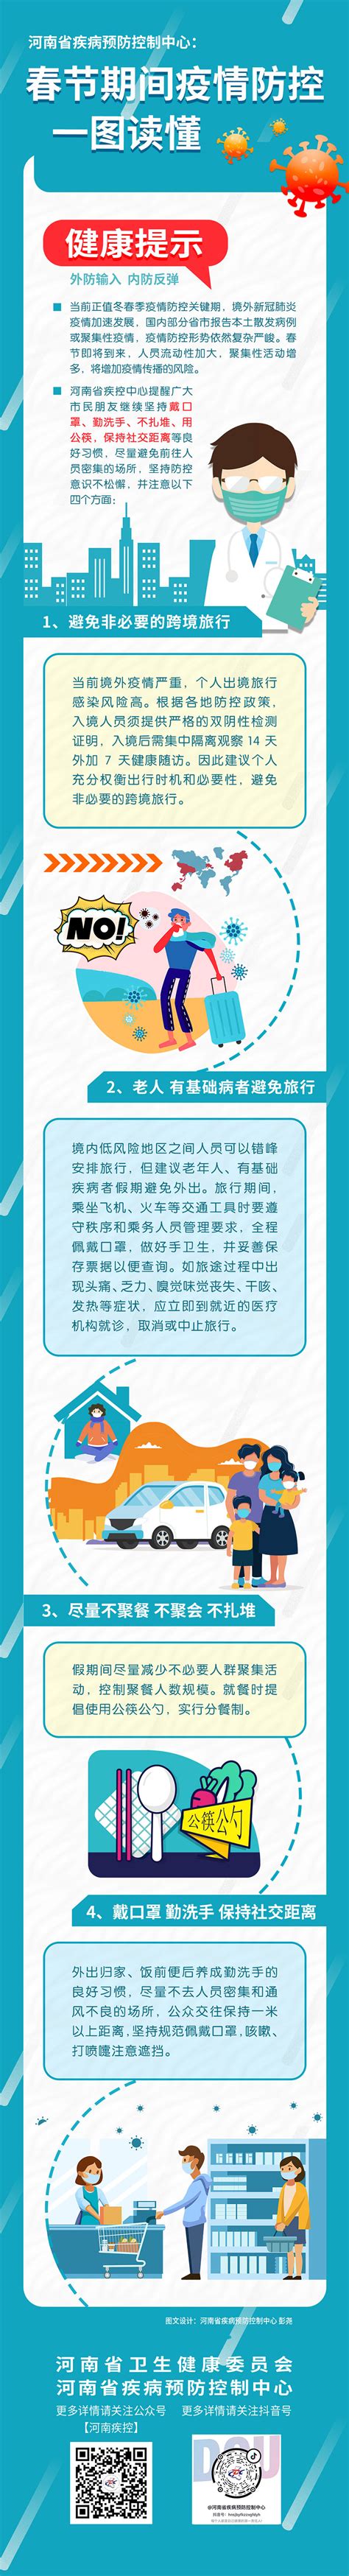 春节期间疫情防控健康提示-河南省卫生健康委员会